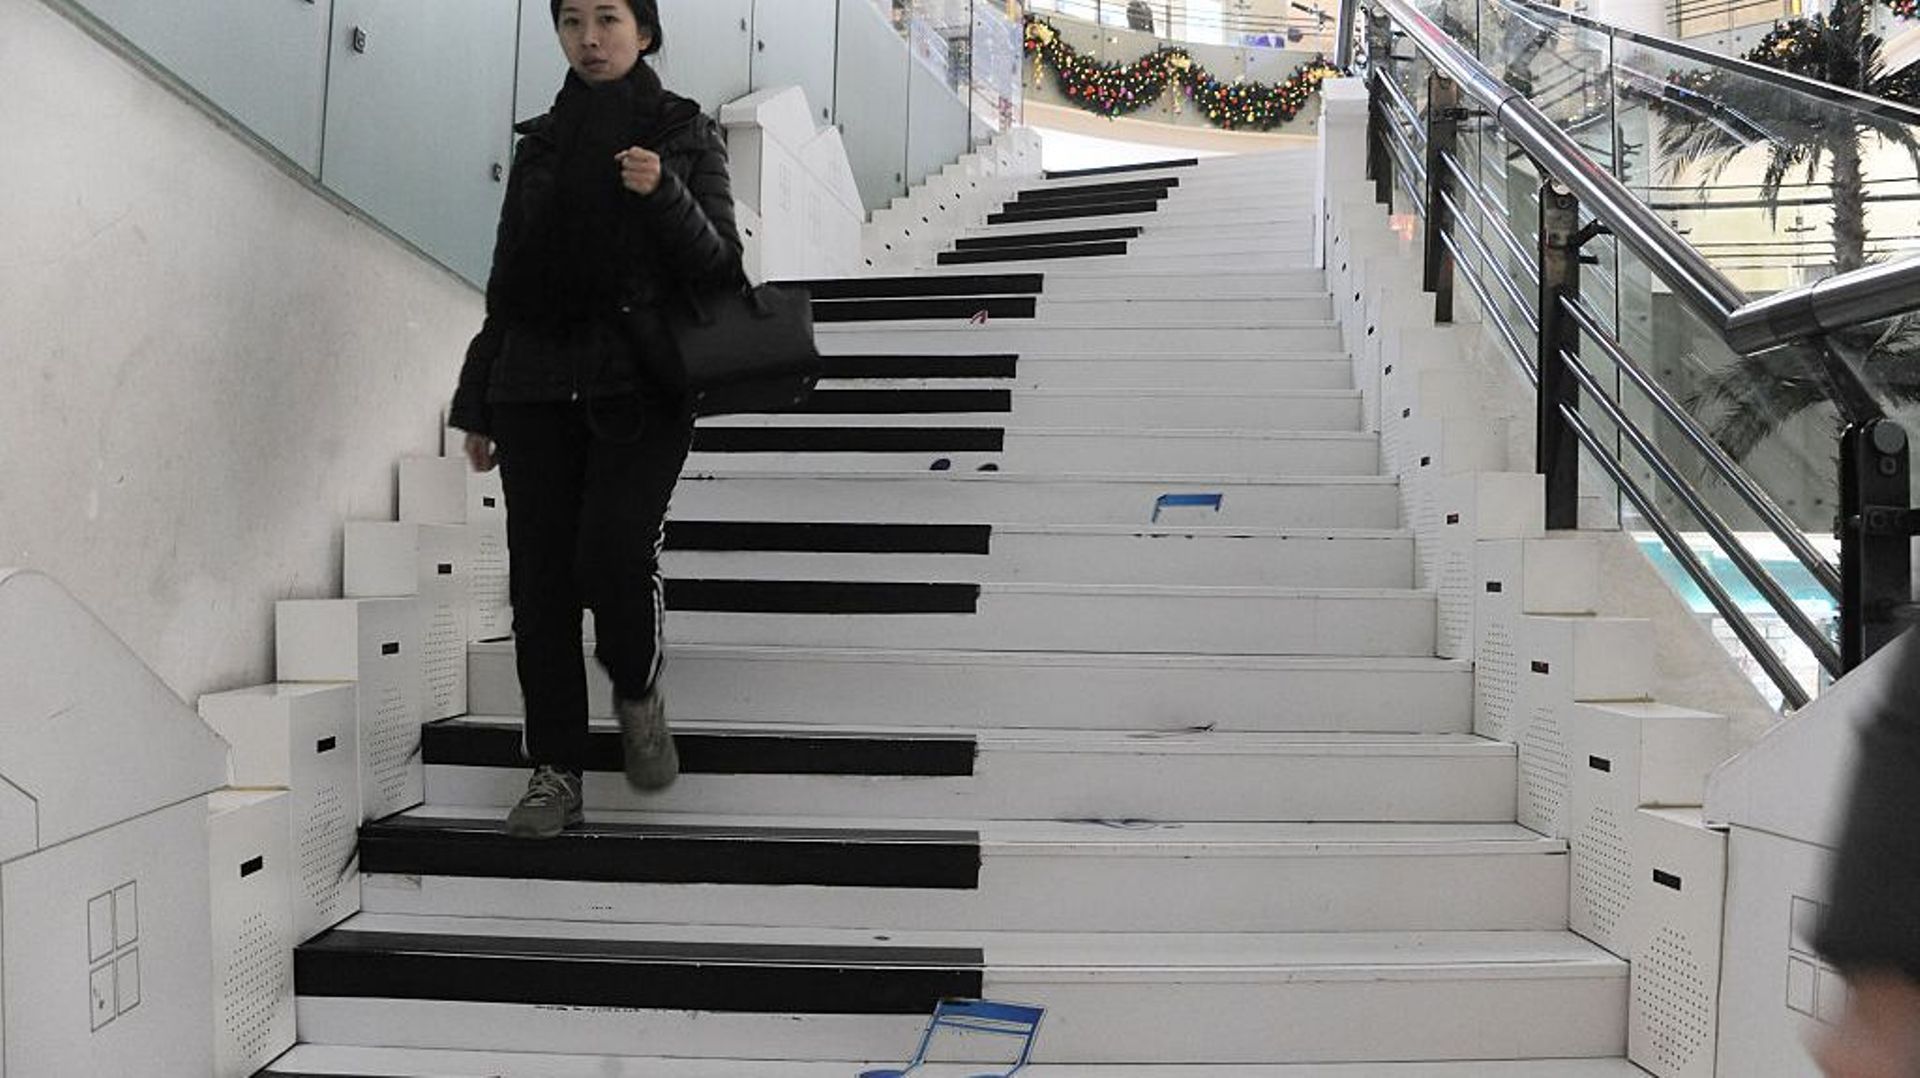 A Stockholm et à Jinana, en Chine, un piano dessiné sur des escaliers pour décourager les individus à prendre l’escalator.